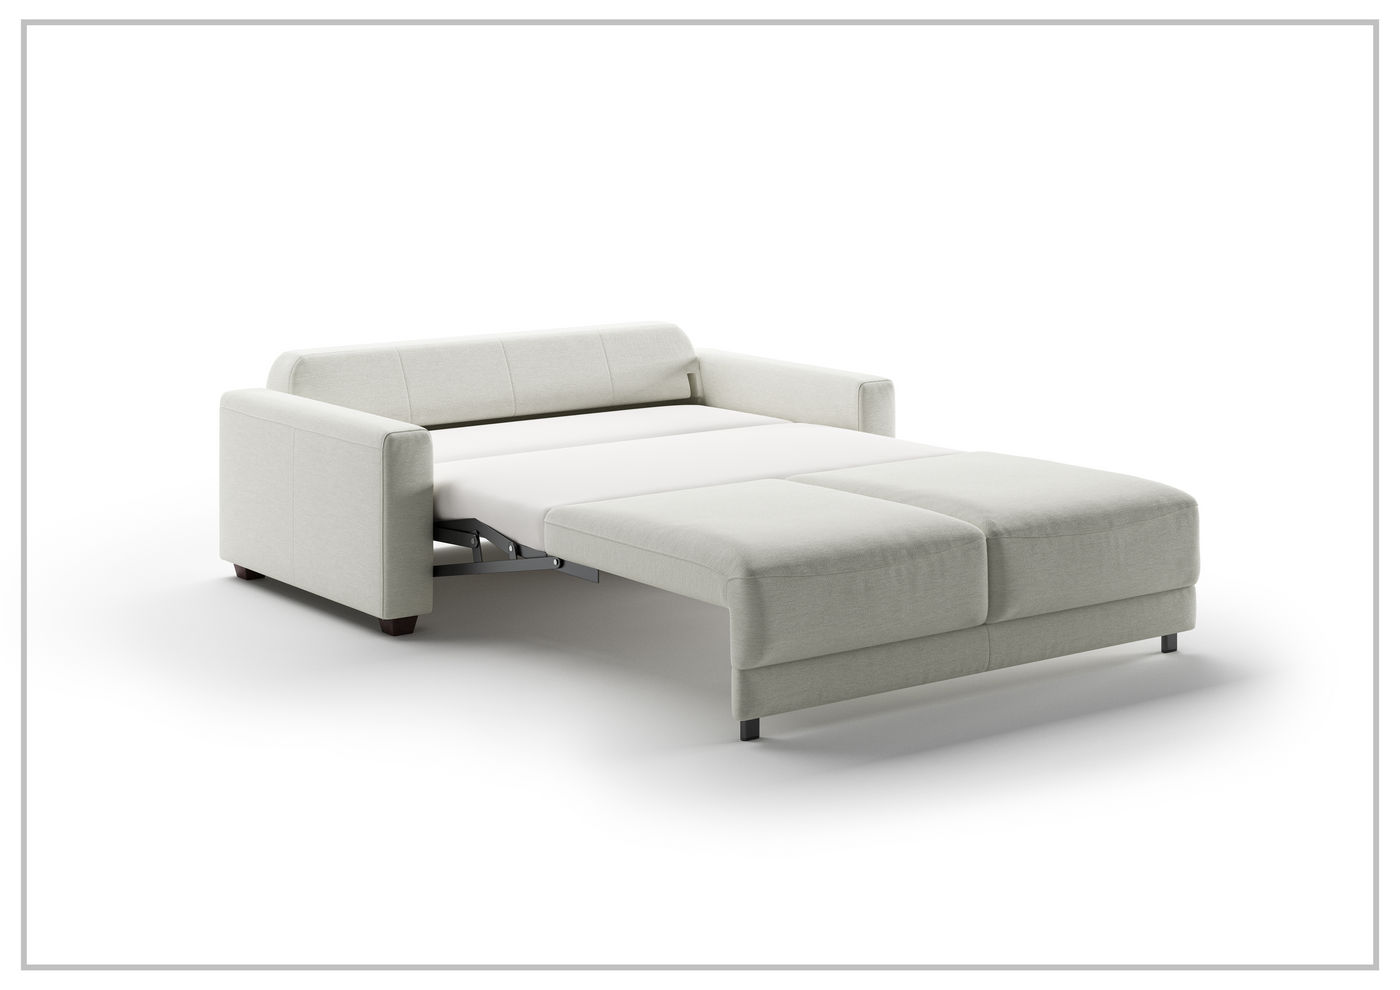 Belton Single Motion Queen Sofa Sleeper with Foam Mattress